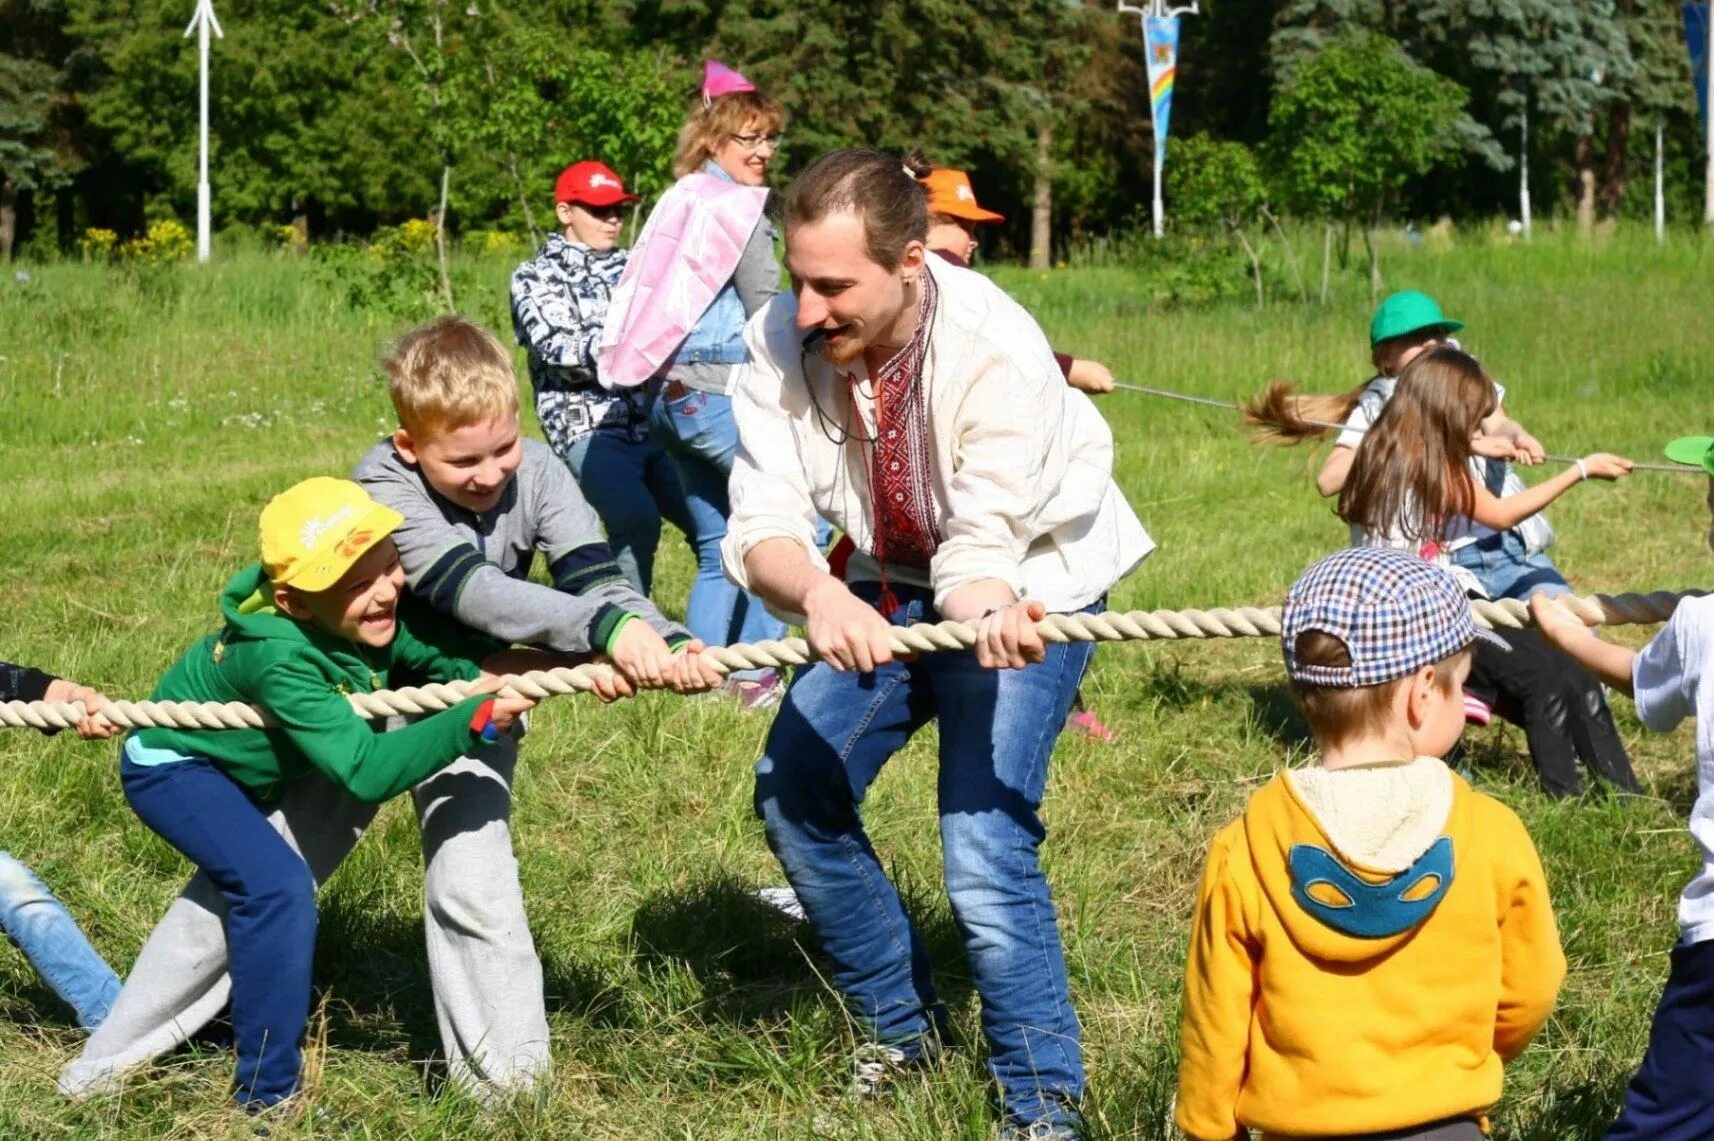 Развлечение для детей и родителей. "Лагерь для перемещённых лиц3" - Подольск. Летний лагерь. Досуг детей. Детский лагерь.